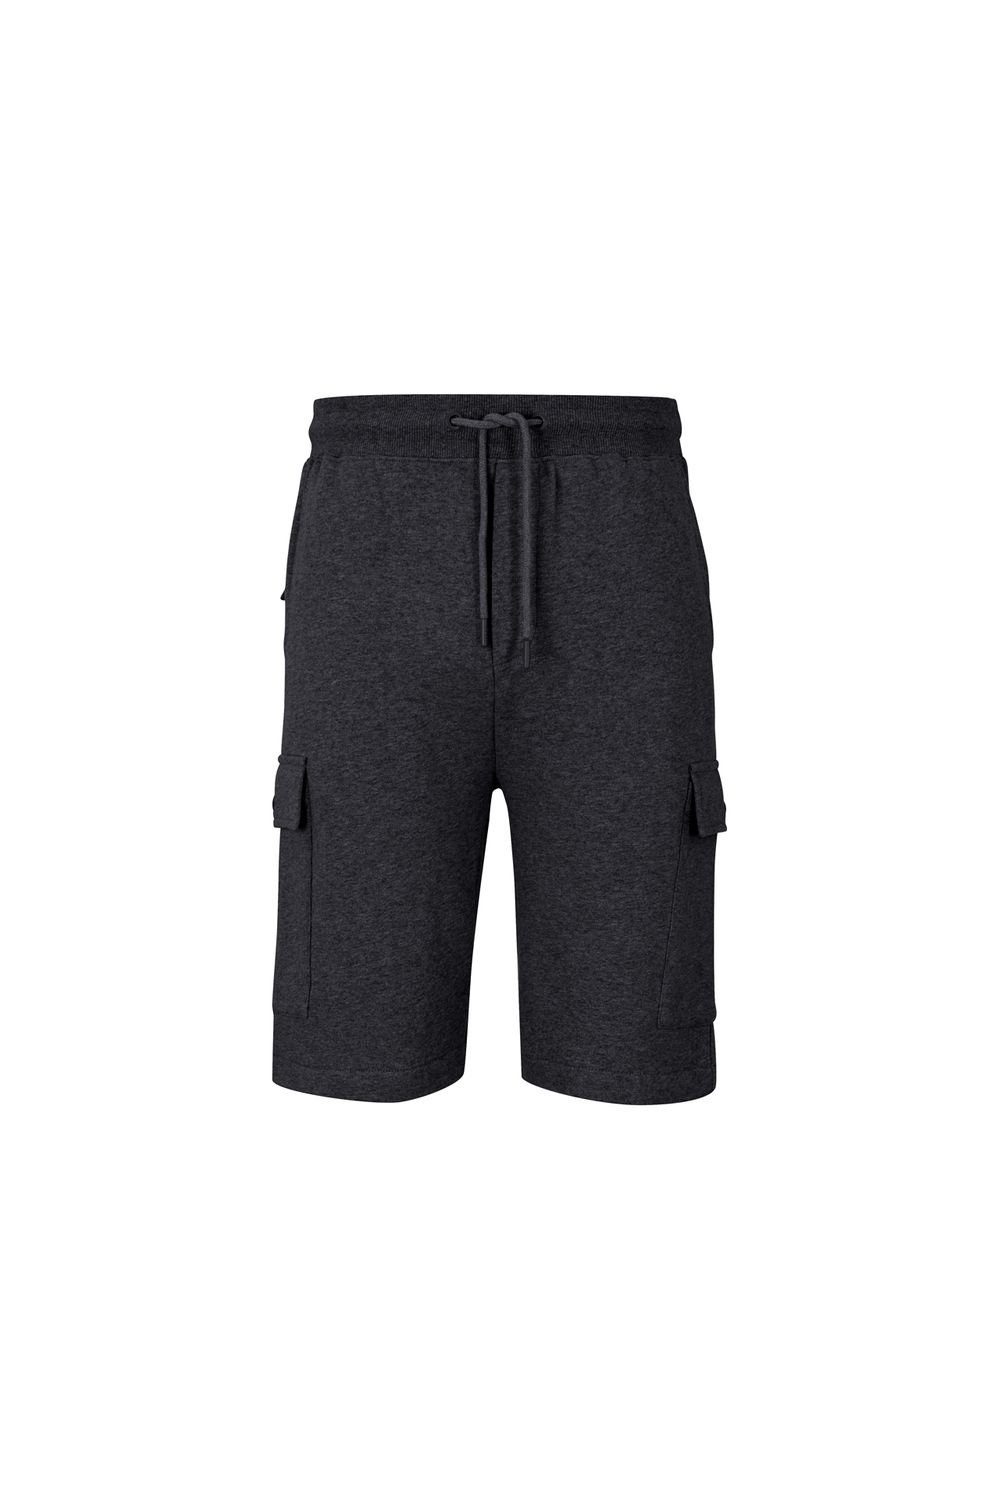 Joop! Shorts JJ222J017 aus Baumwolle Dark Blue 405 | Shorts